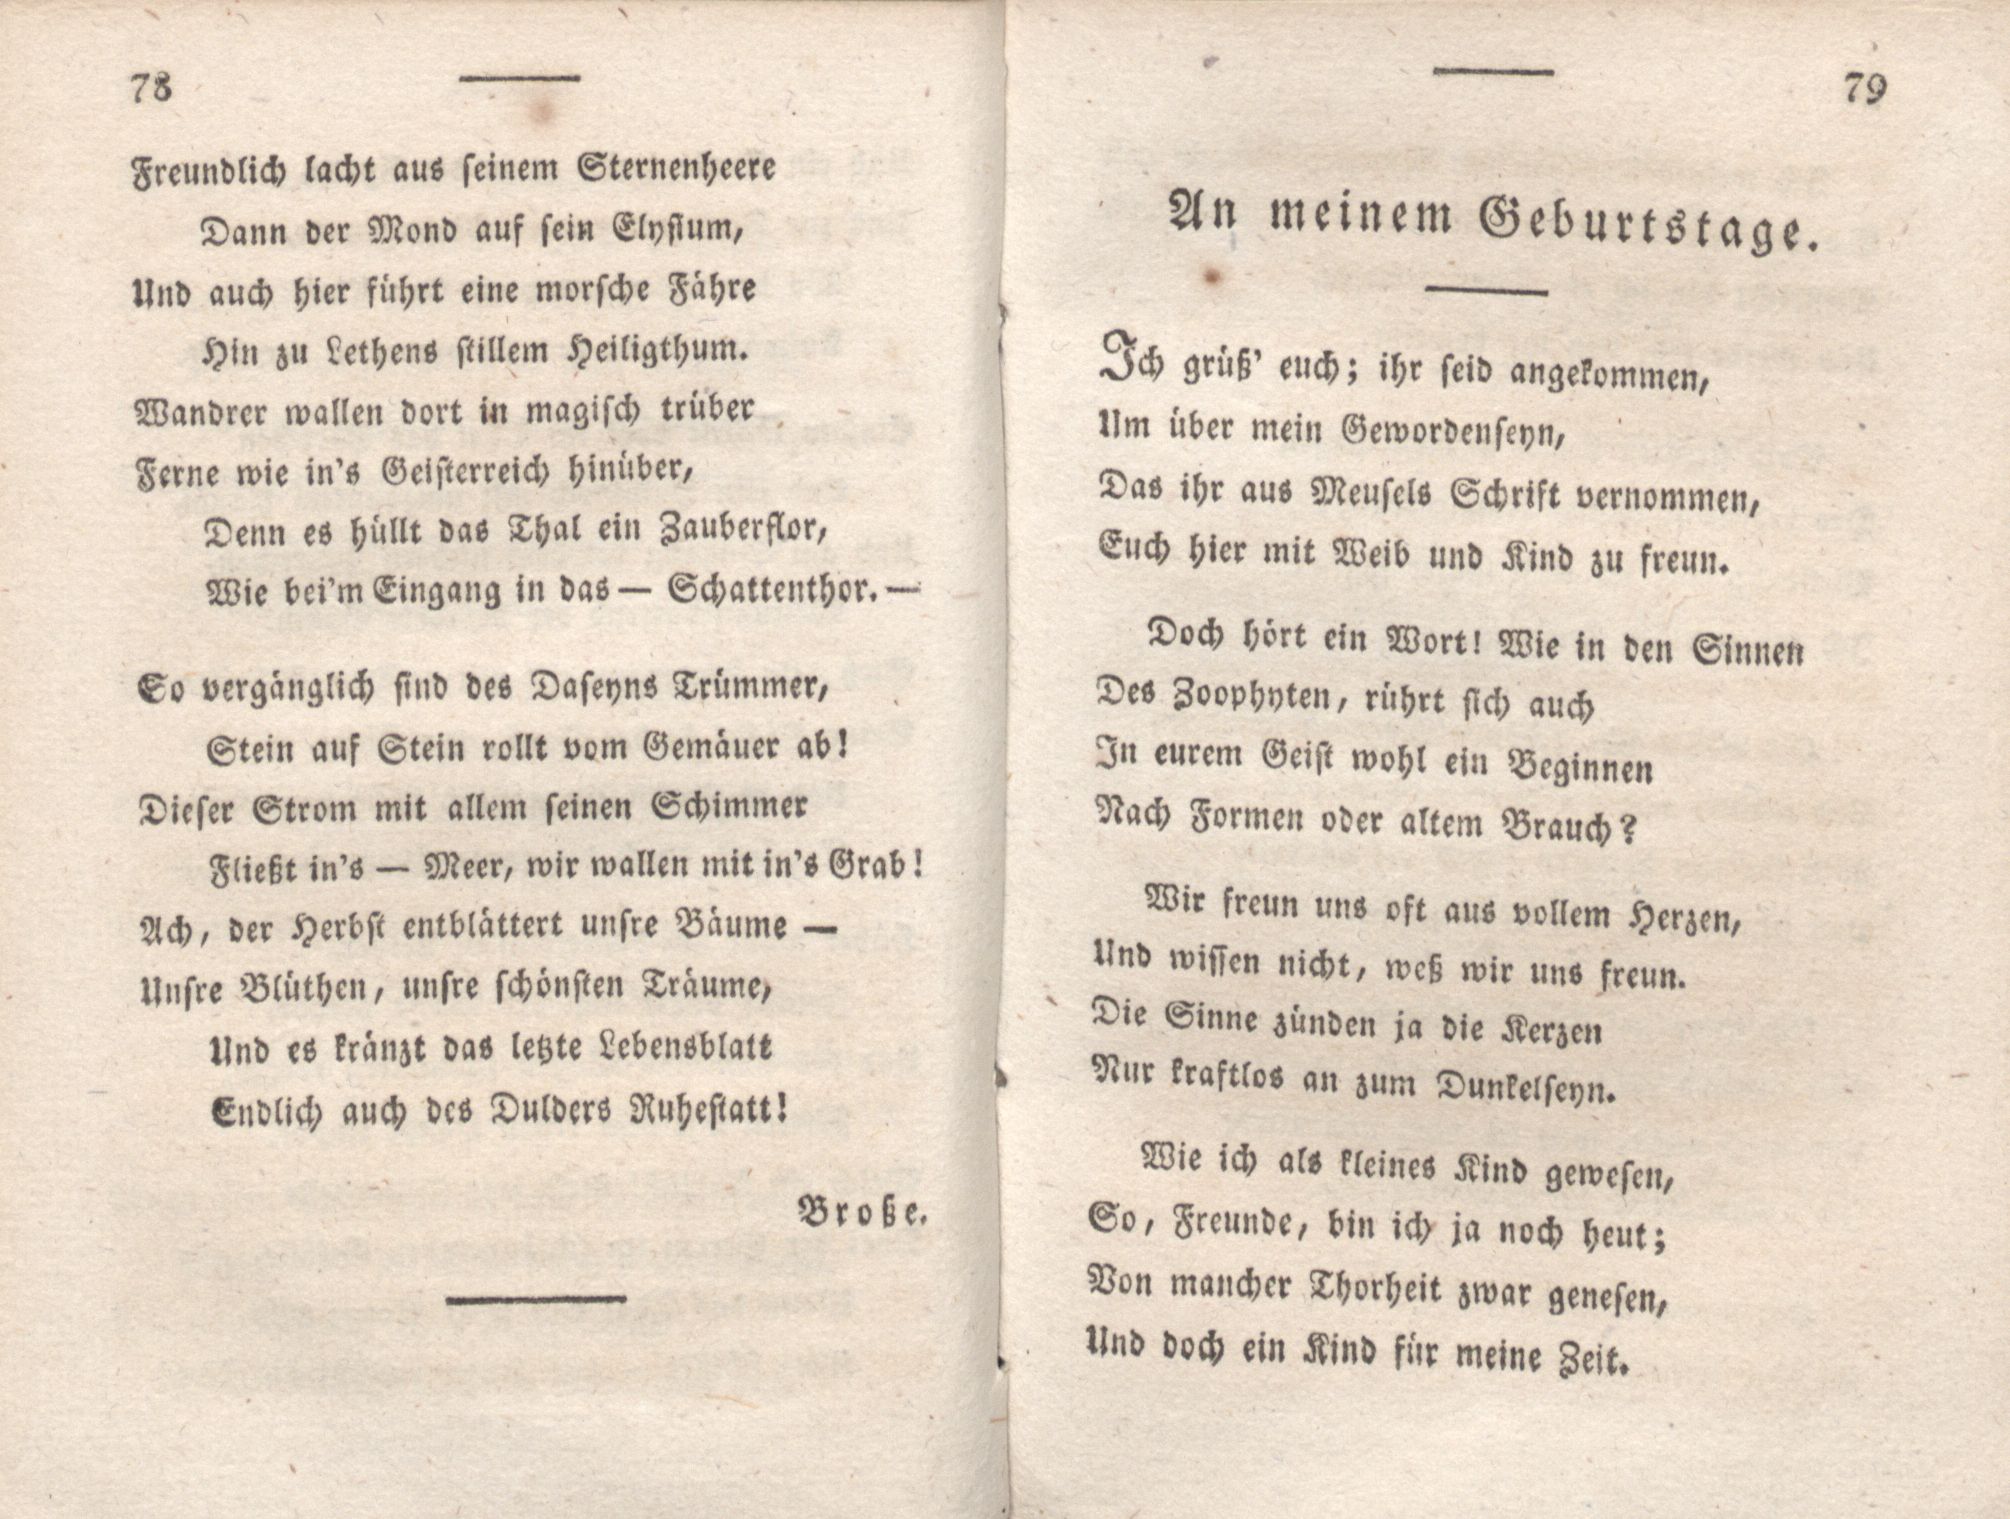 Livona [2] (1815) | 55. (78-79) Main body of text